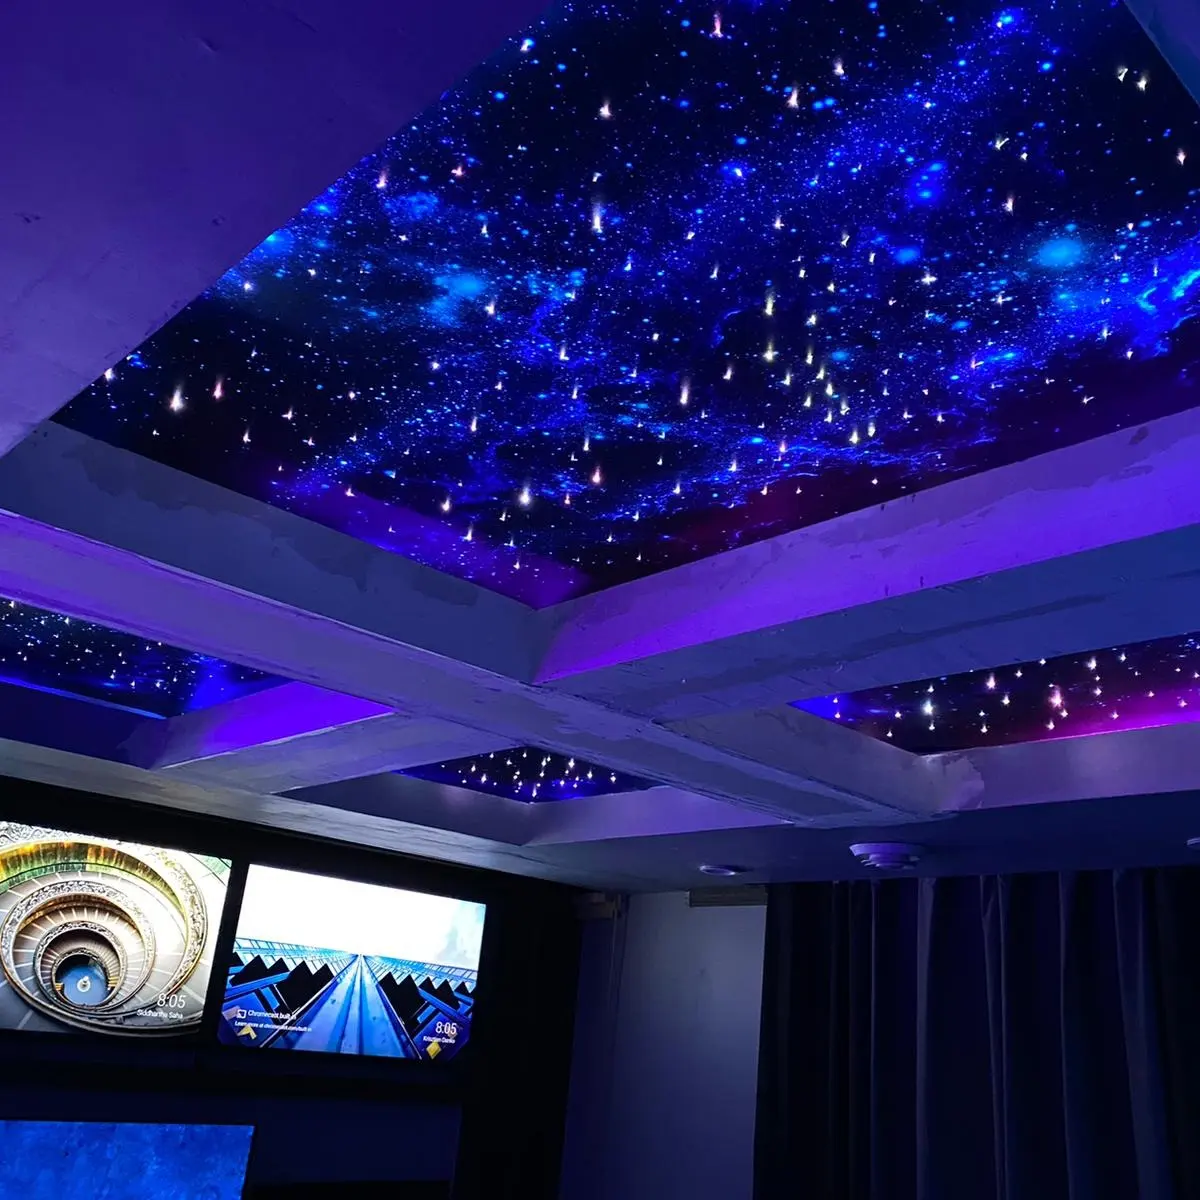 MSD UV-gedruckte weiche Folie PVC Stretch Decke Film Design Himmel Thema blauen Himmel und weiße Wolken ues im Showroom